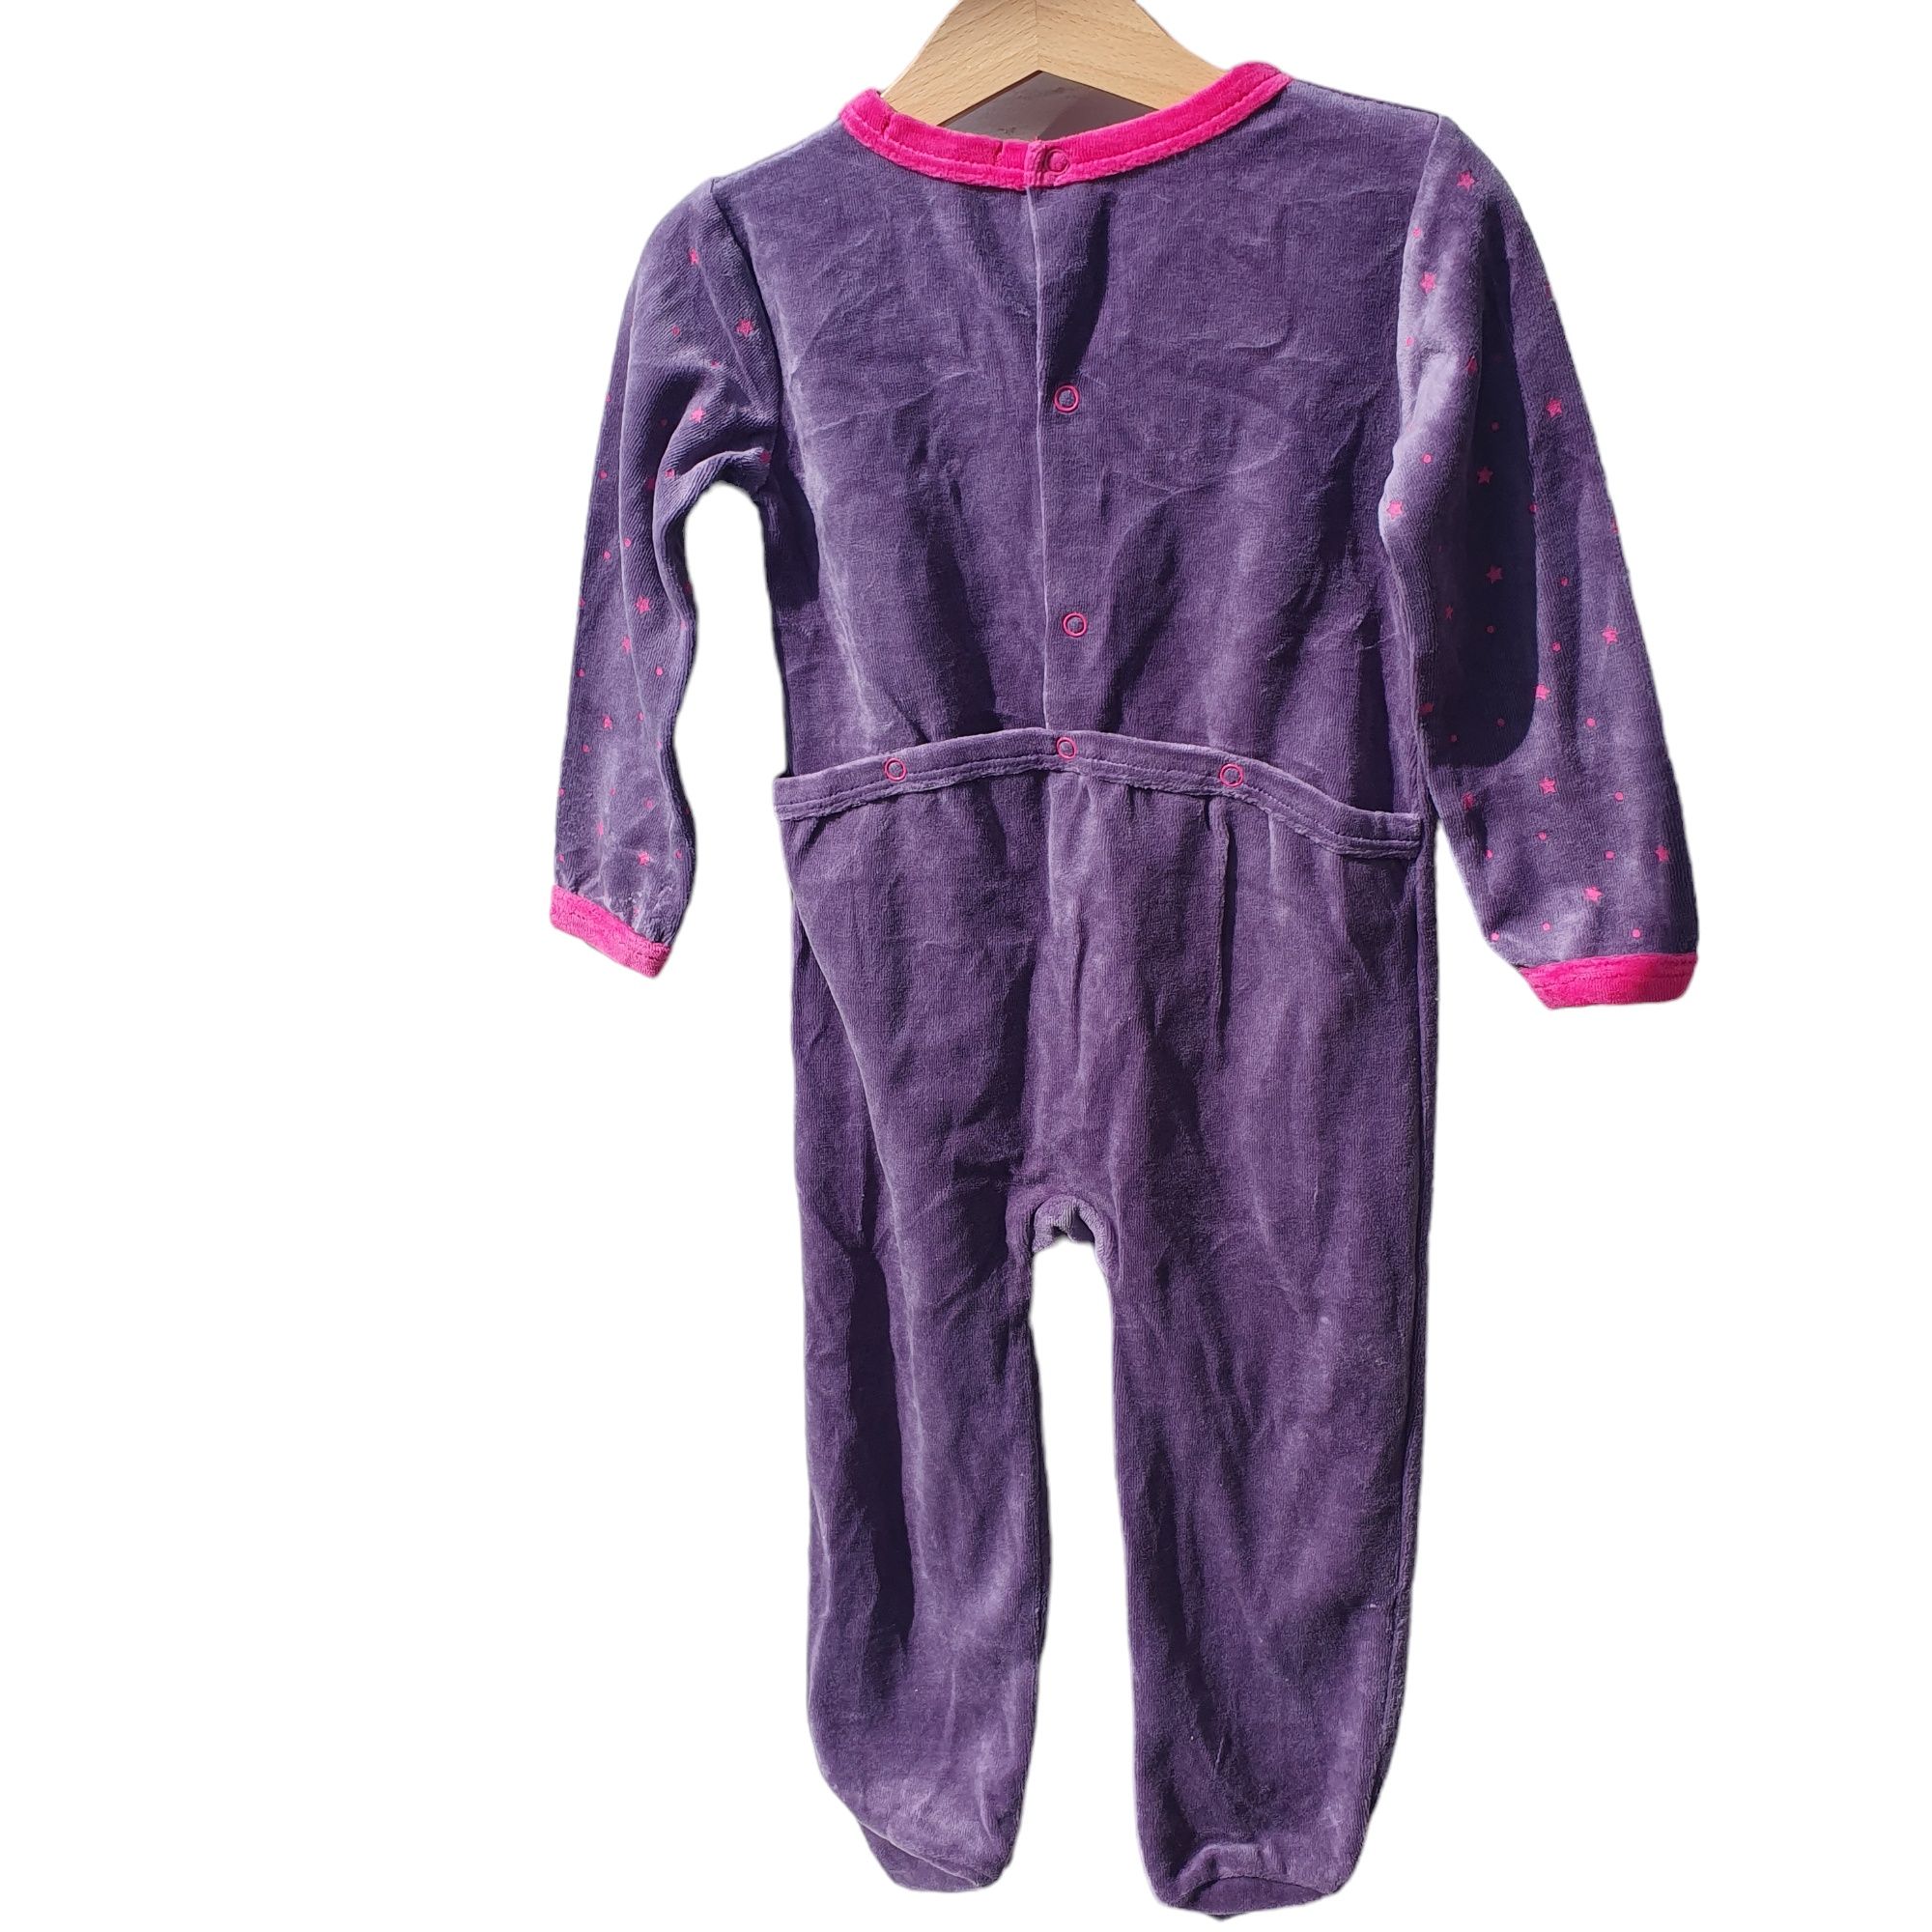 Costum intreg, combinezon, pijama tip salopetă, 86-92, 1,5-2